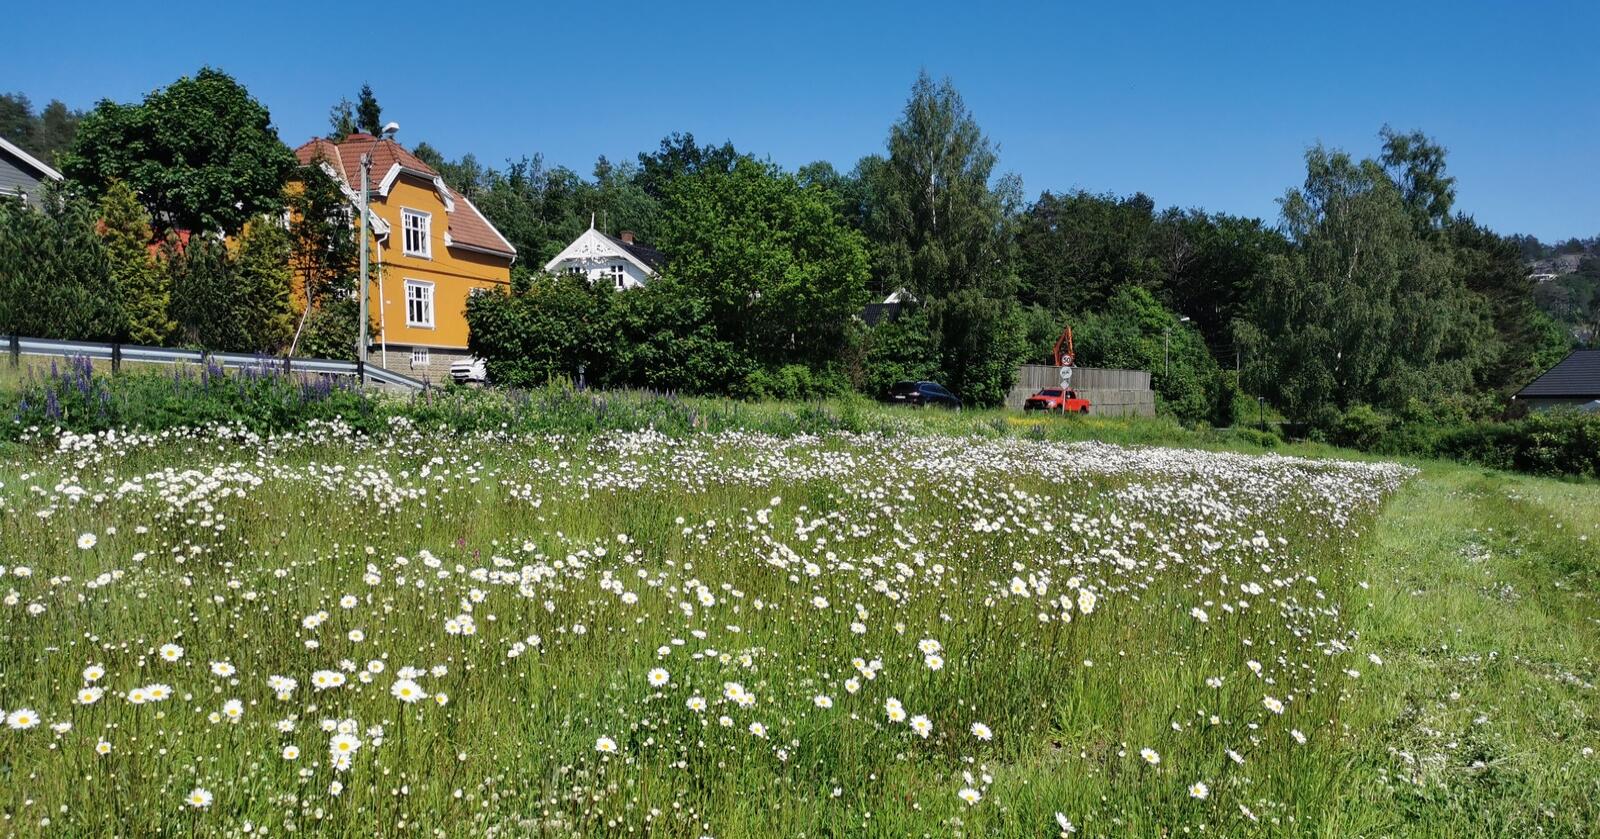 Permanent blomstereng: I 2020 etablerte NLR Viken blomstereng på en liten teig ute av produksjon i Sandefjord. Her ble Nibio Landviks stedegne markblomster sådd inn, og i 2021 blomstrer det fint. (Foto: Hanna Pauline Næss Holm/NLR Viken)